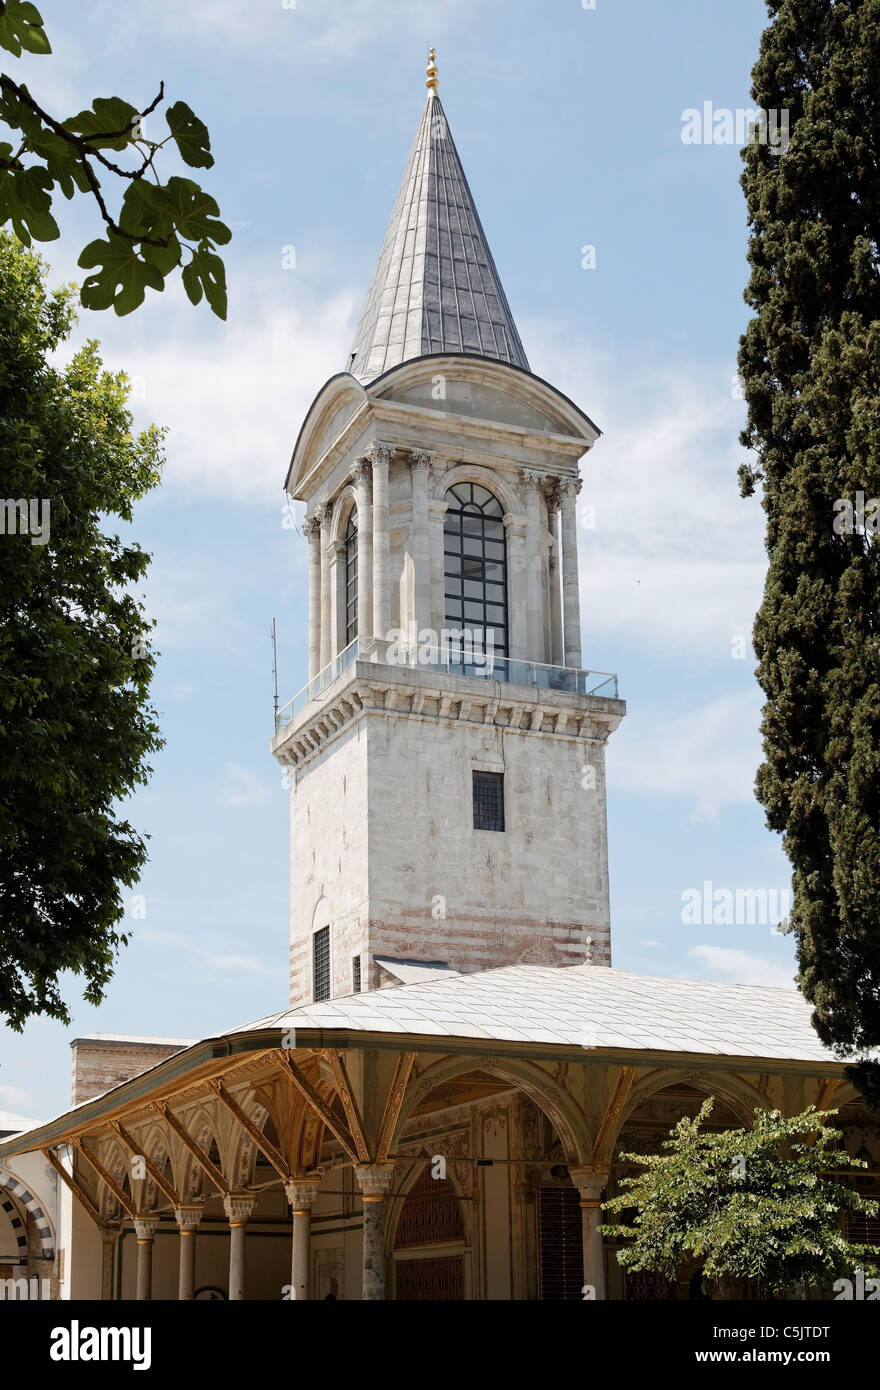 Spire, véranda, tonnelle, pavillon au Palais de Topkapi à Istanbul, portrait à travers les arbres Banque D'Images